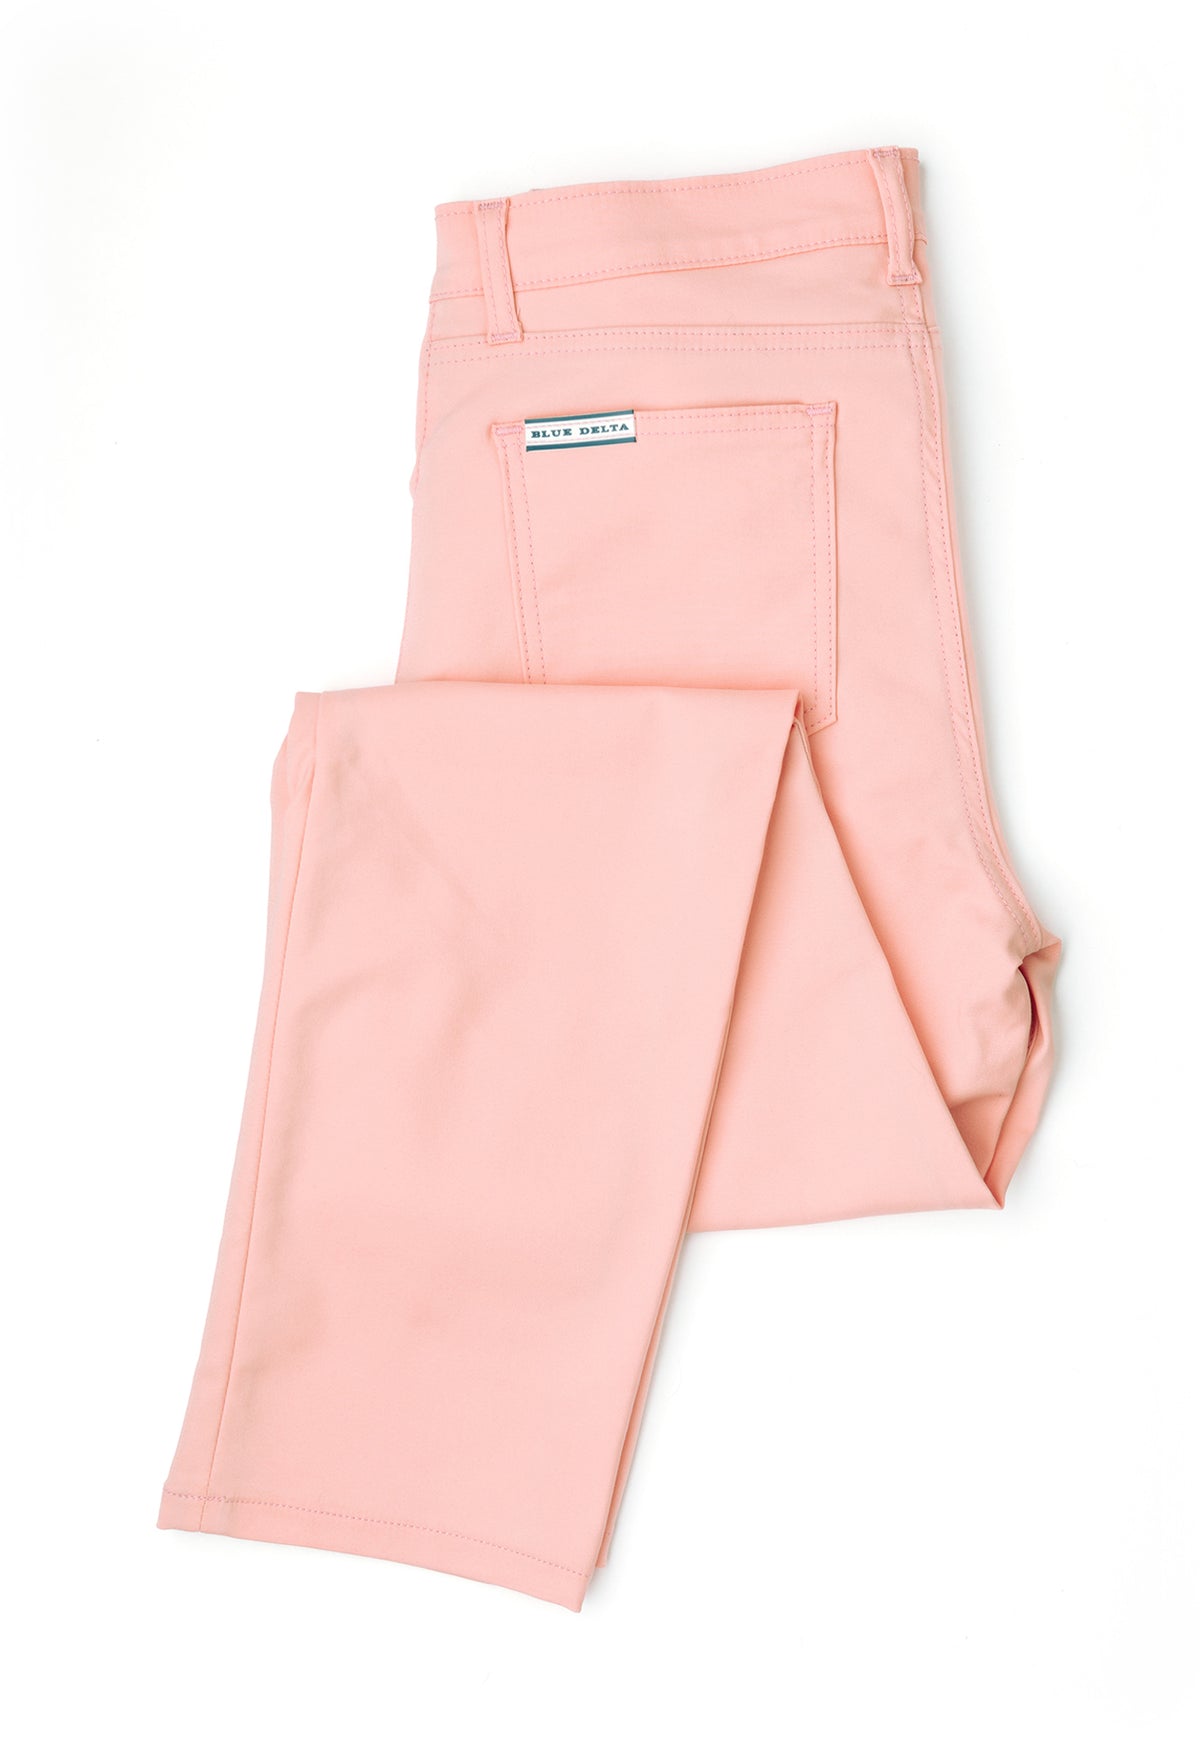 Custom Pants - Make Your Own Pants